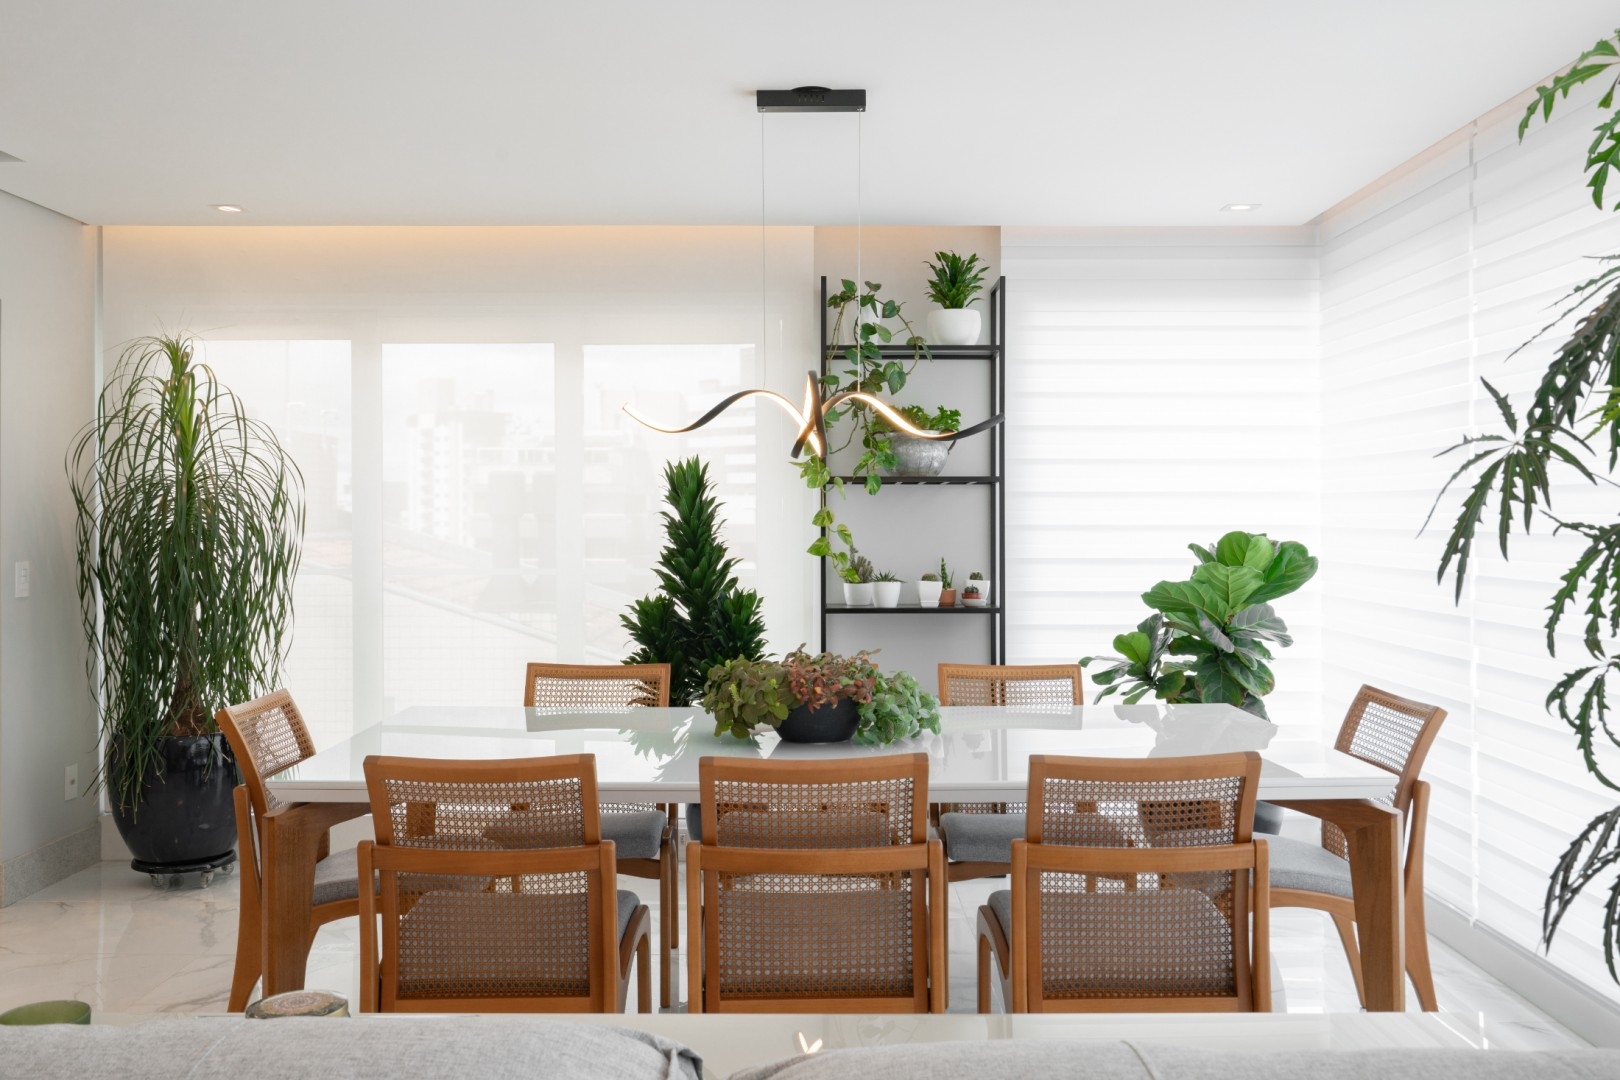 Apto Lageado -sala de jantar com estante com estrutura metálica vazada para vegetação e plantas. @cubikarquitetura